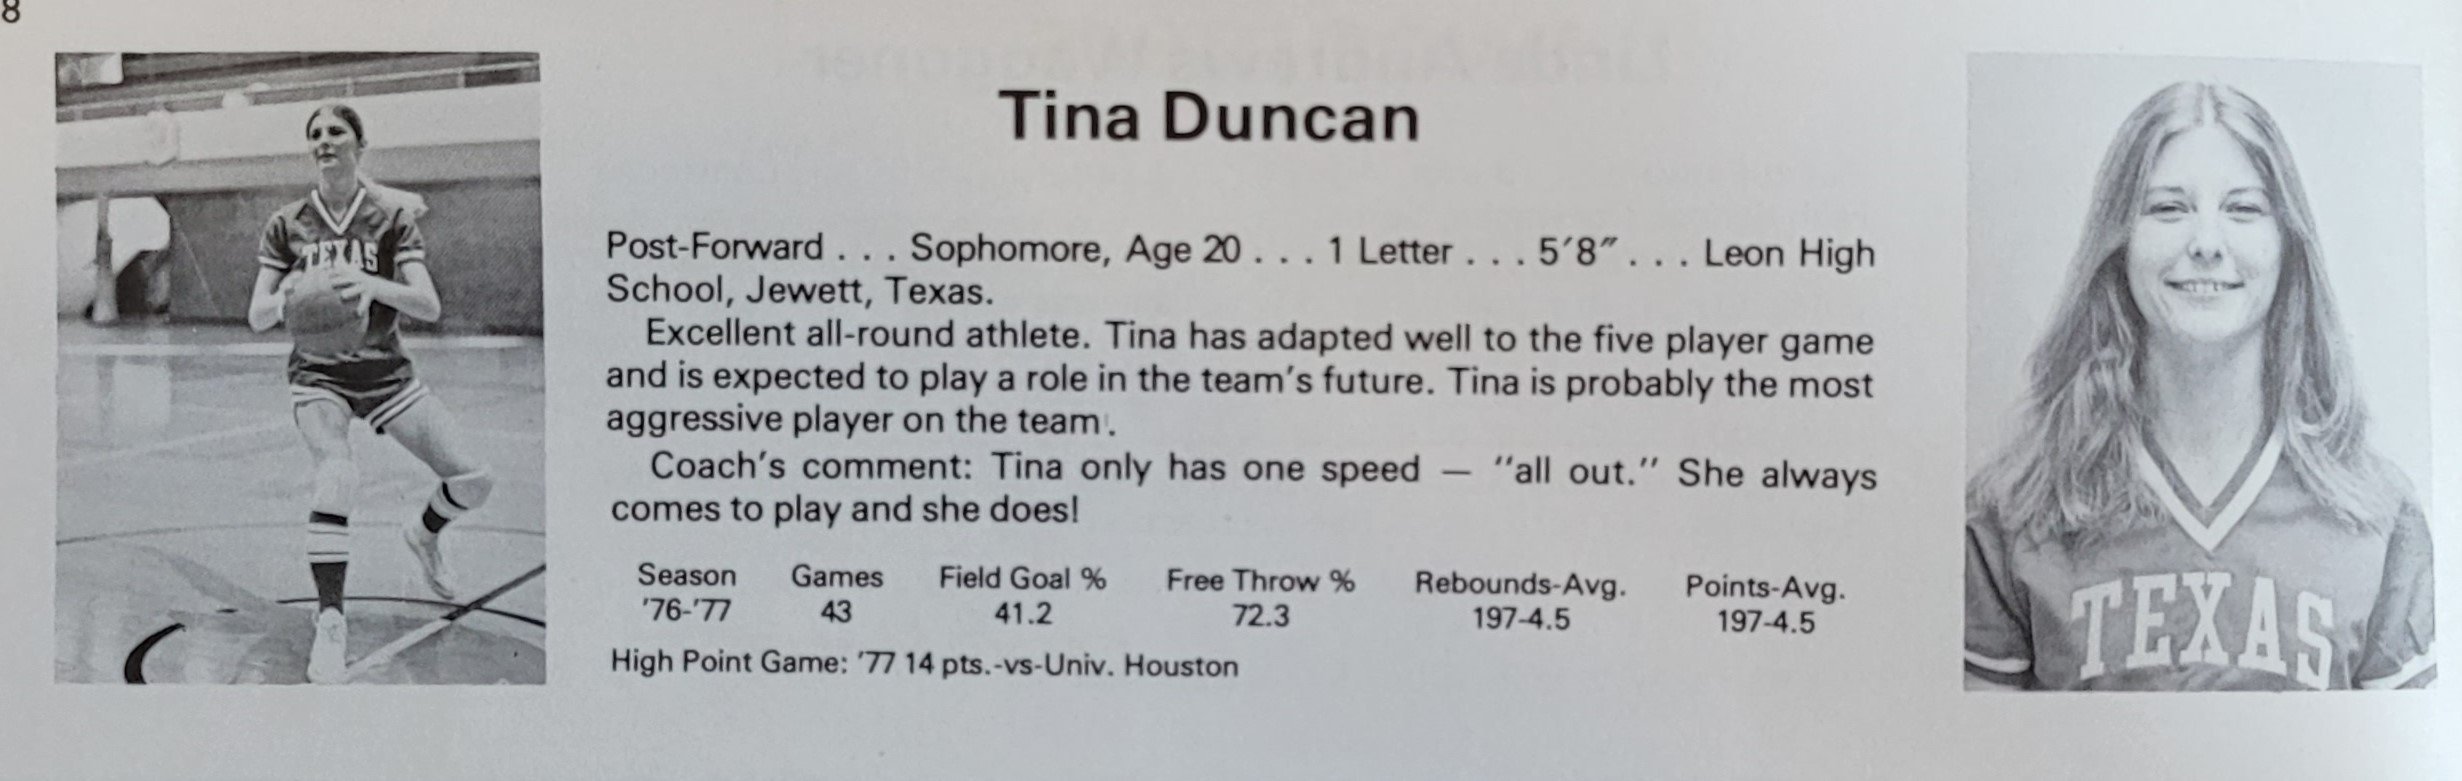 Tina Duncan  (Copy)